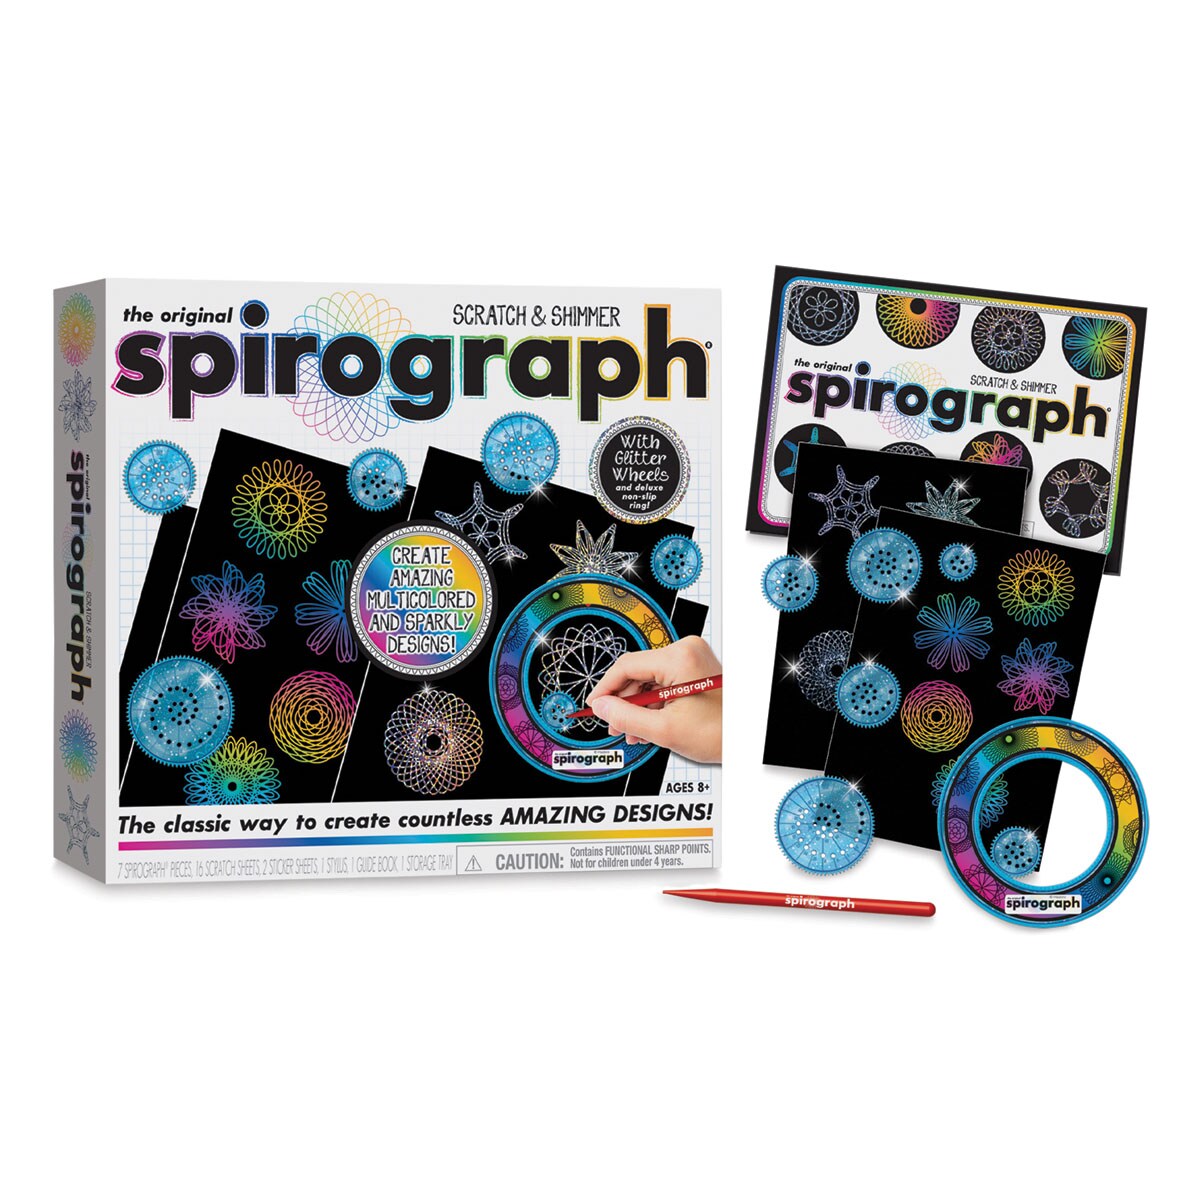 The Original Spirograph Scratch &#x26; Shimmer Set